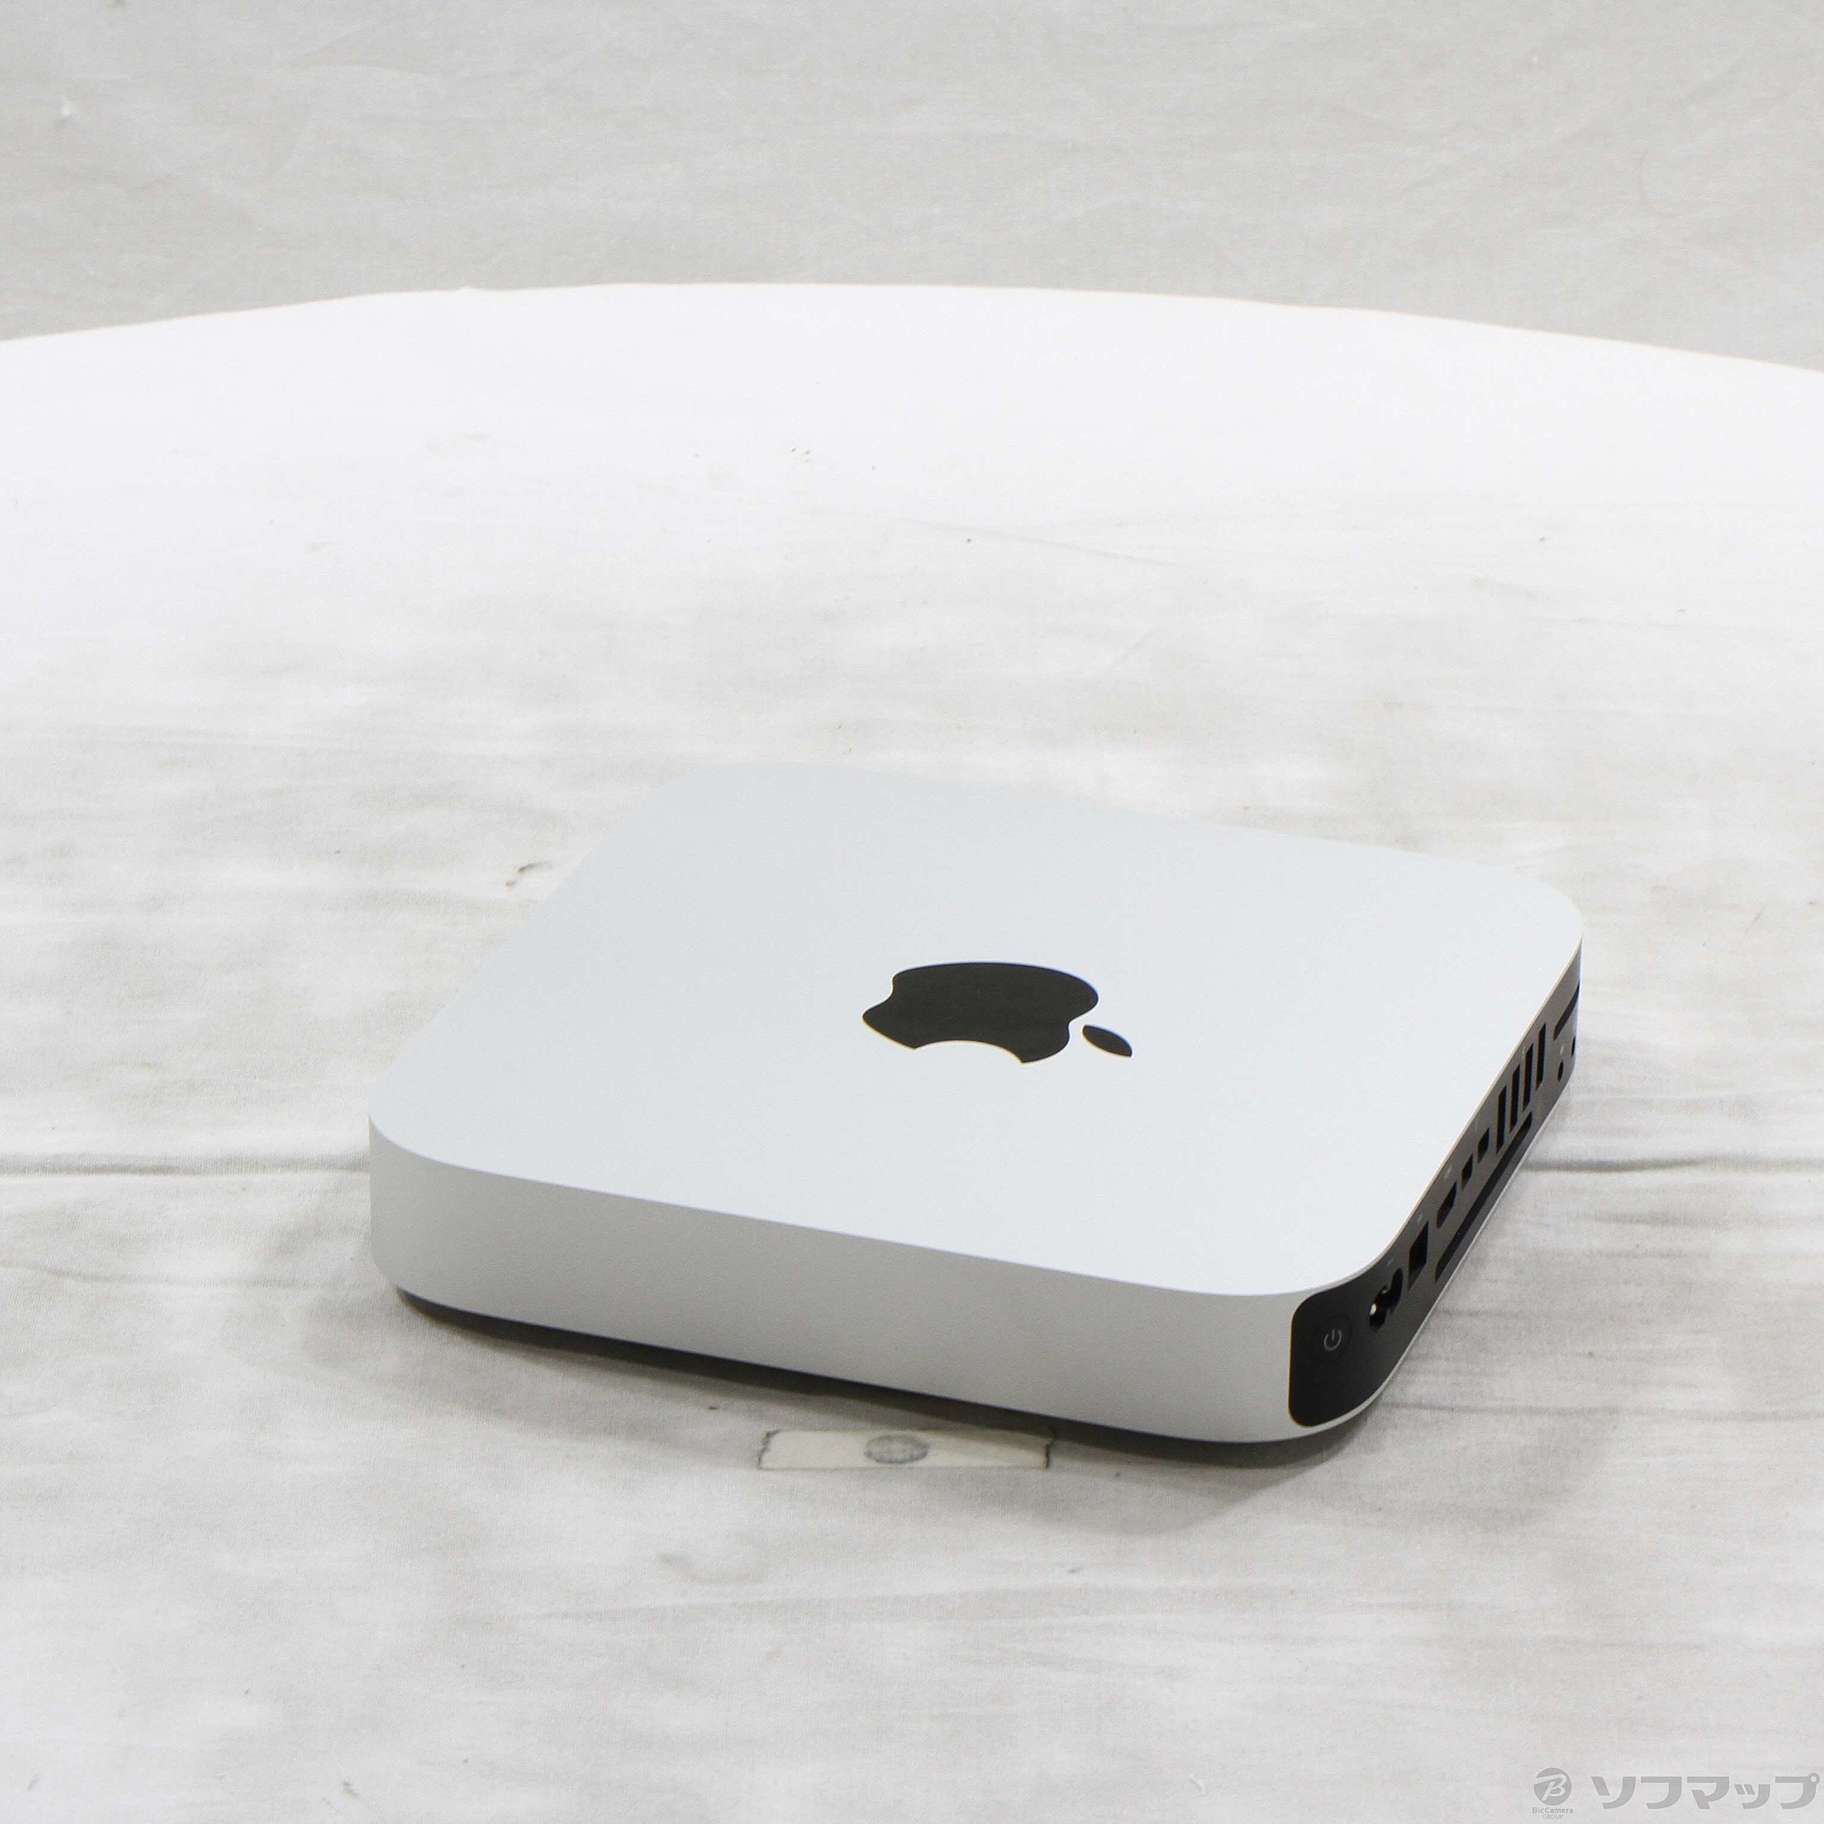 【動作確認済】Mac mini (Late 2014) MGEN2J/A起動確認済みです